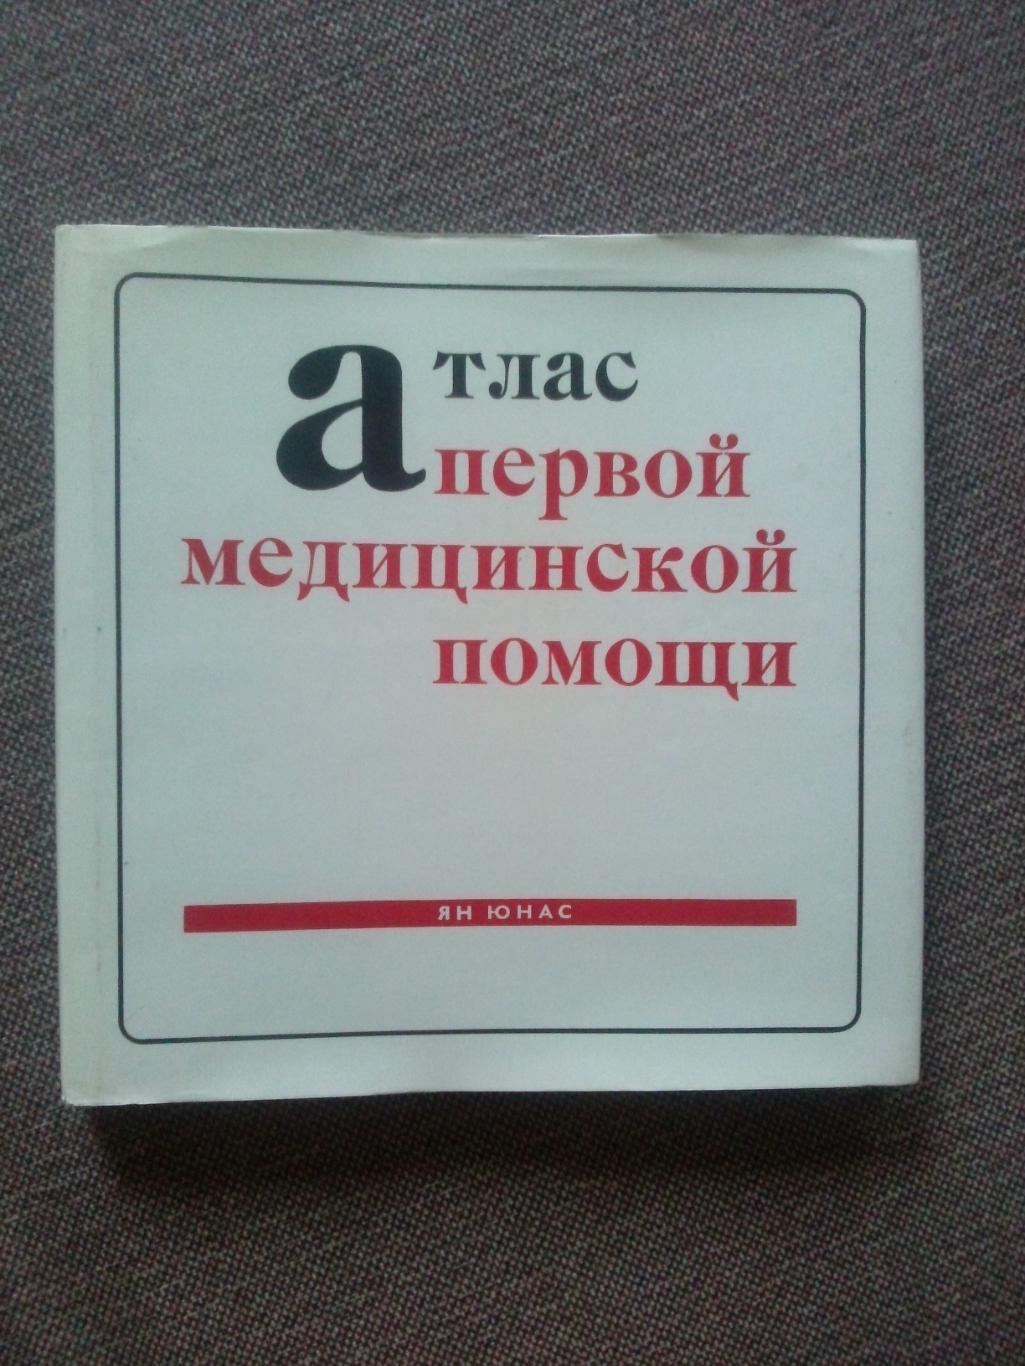 Ян Юнас - Атлас первой медицинской помощи 1974 г.Медицина (словацкое издание